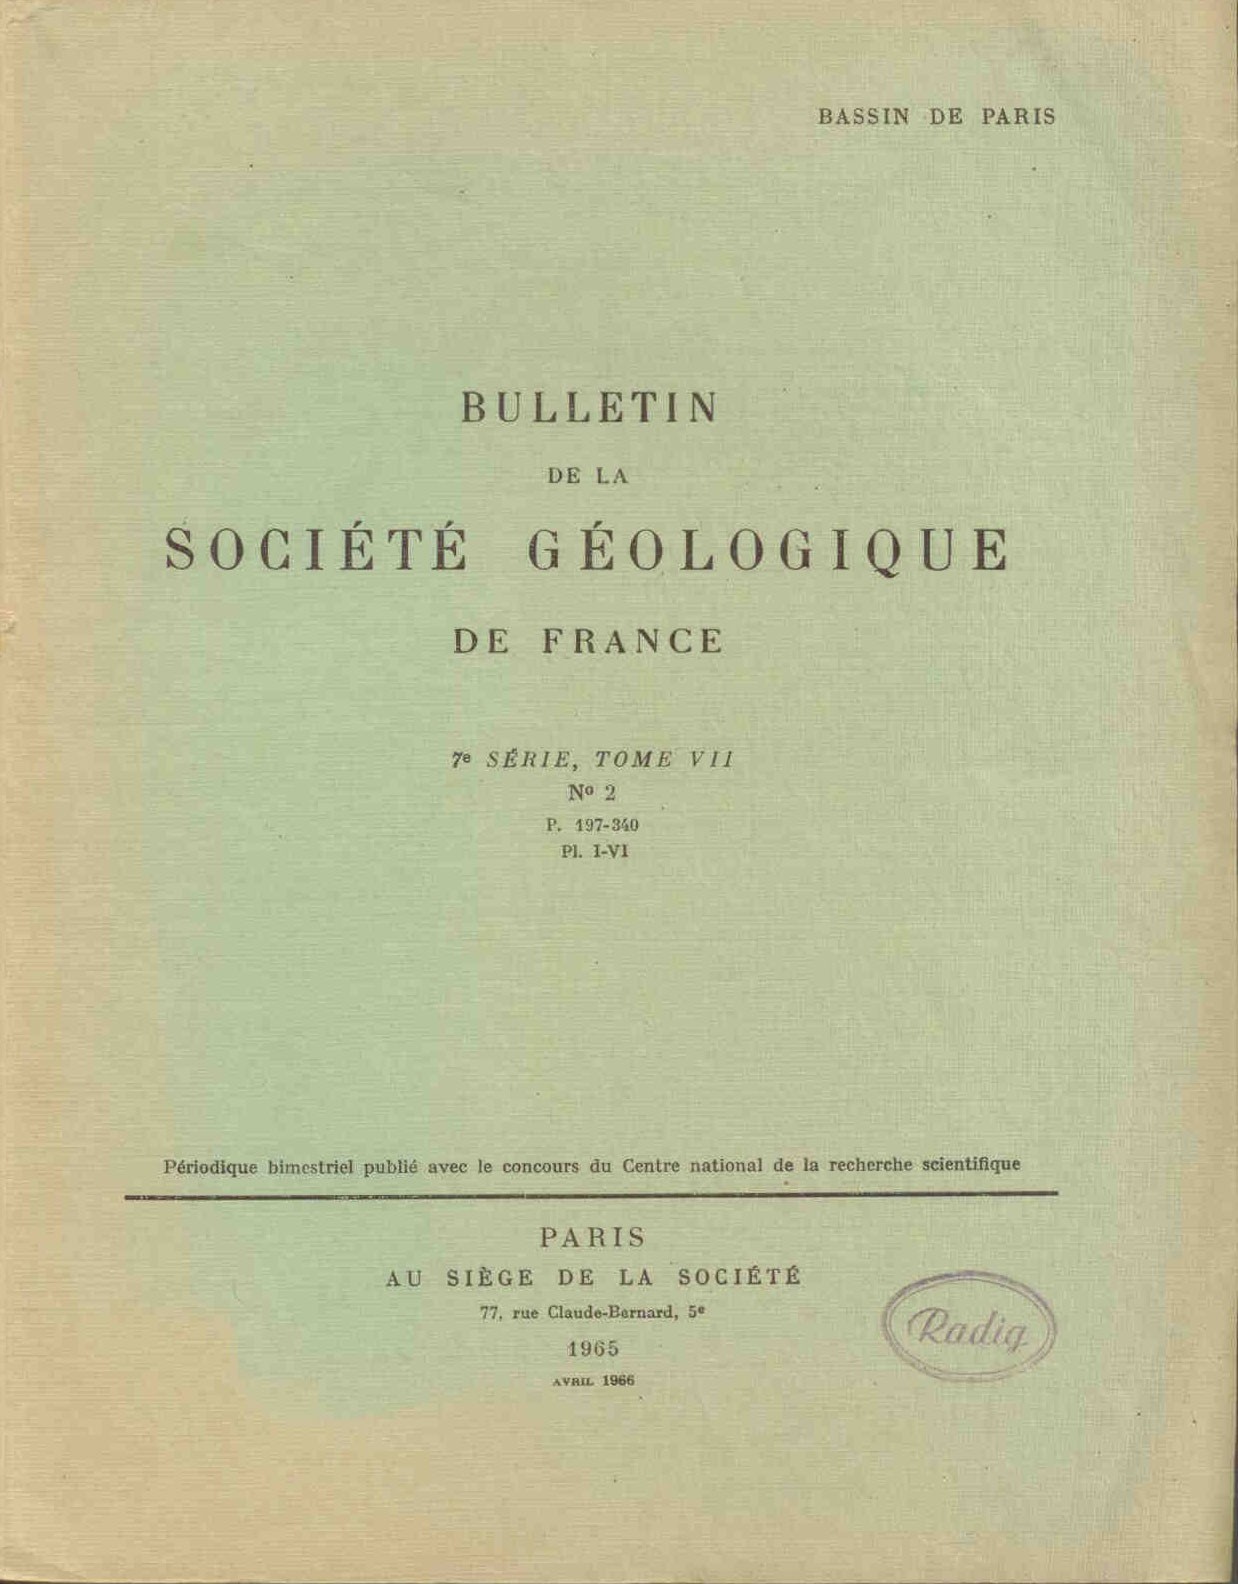 Collectif: Bulletin de la Societe Geologique de France. 7e serie, tome VII.